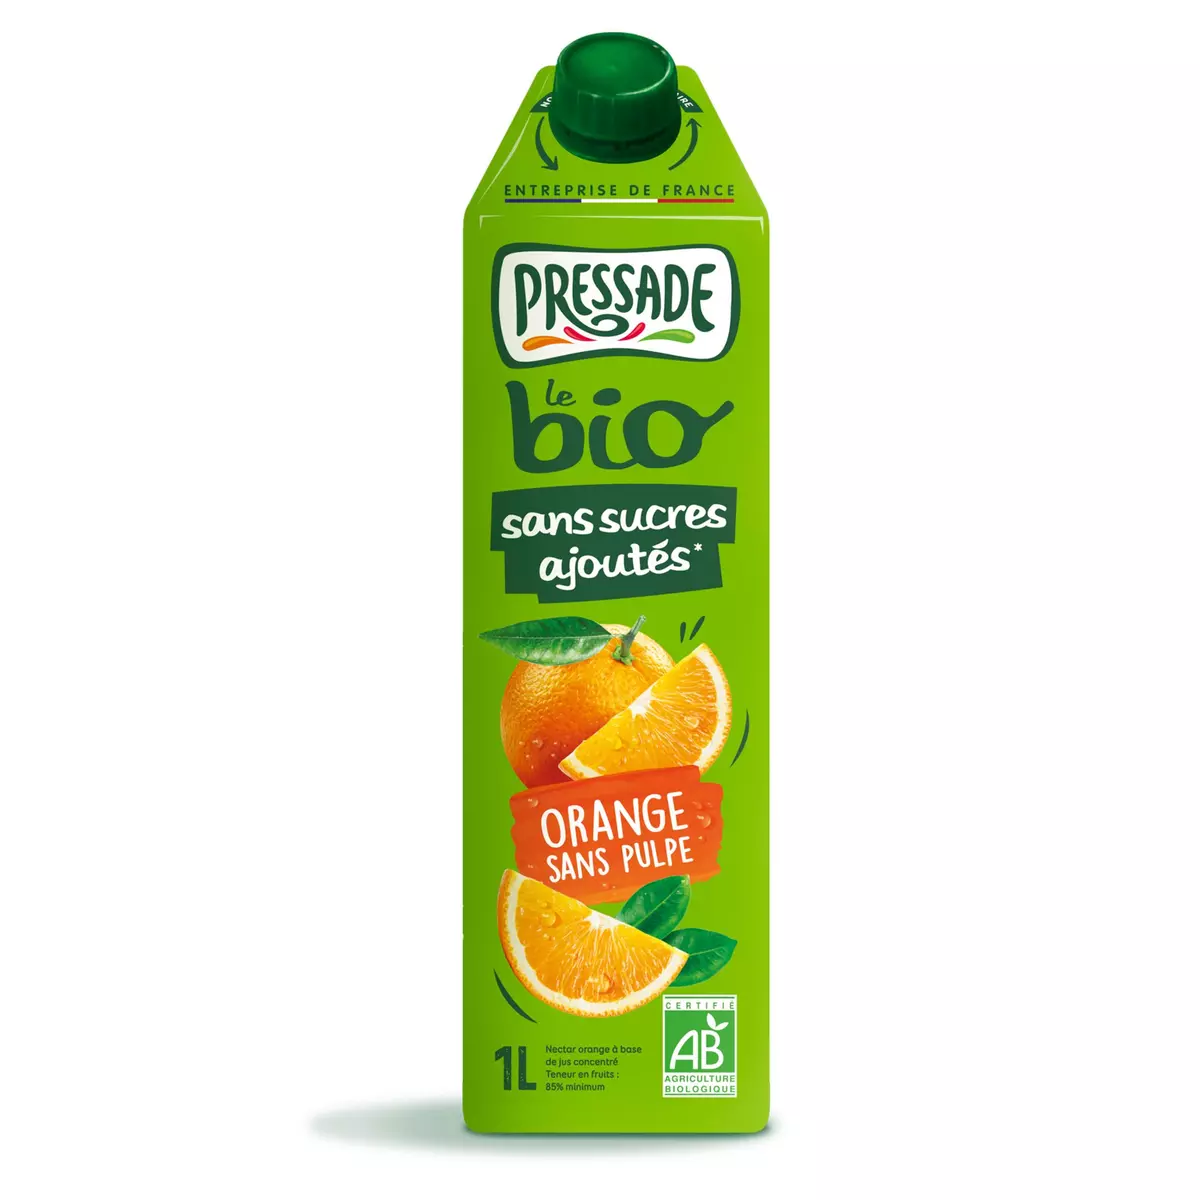 PRESSADE Jus d'orange sans pulpe bio sans sucres ajoutés 1l